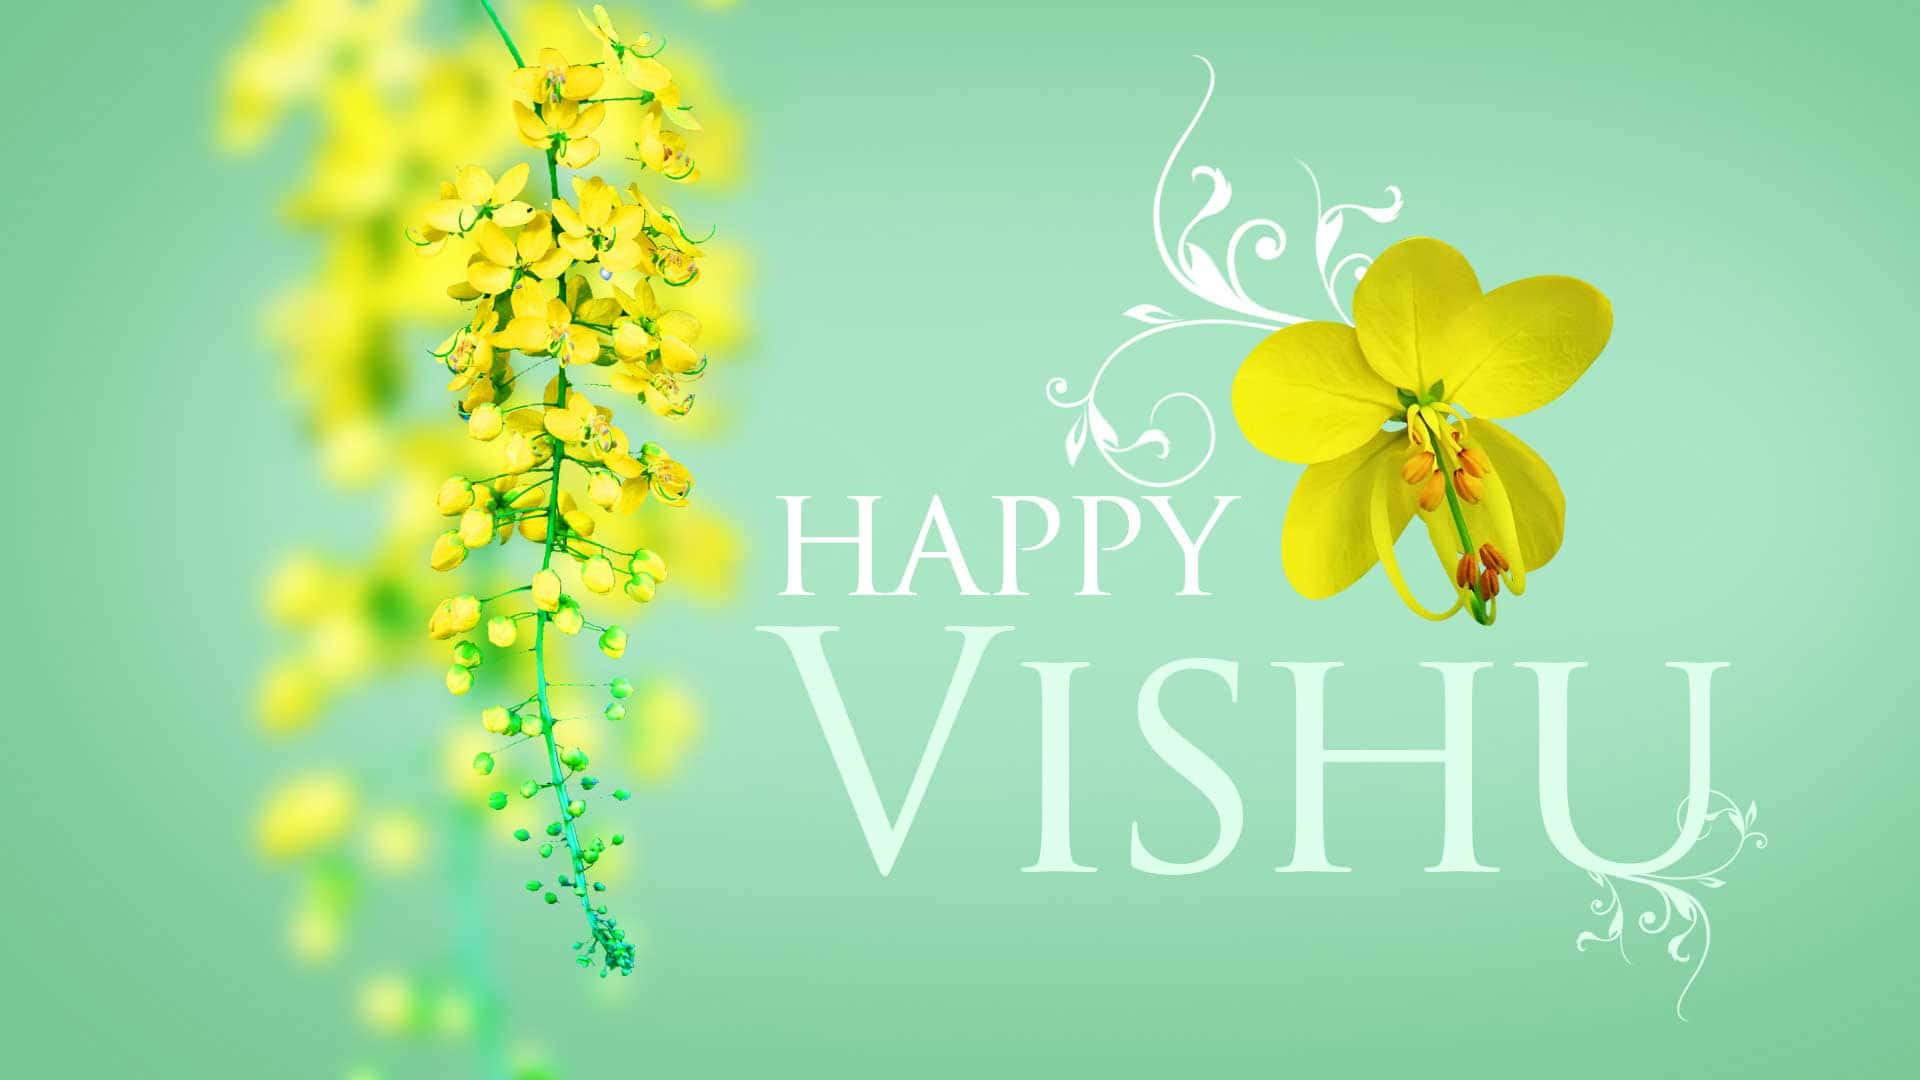 Celebrating Vishu – The Festival of Light and Prosperity